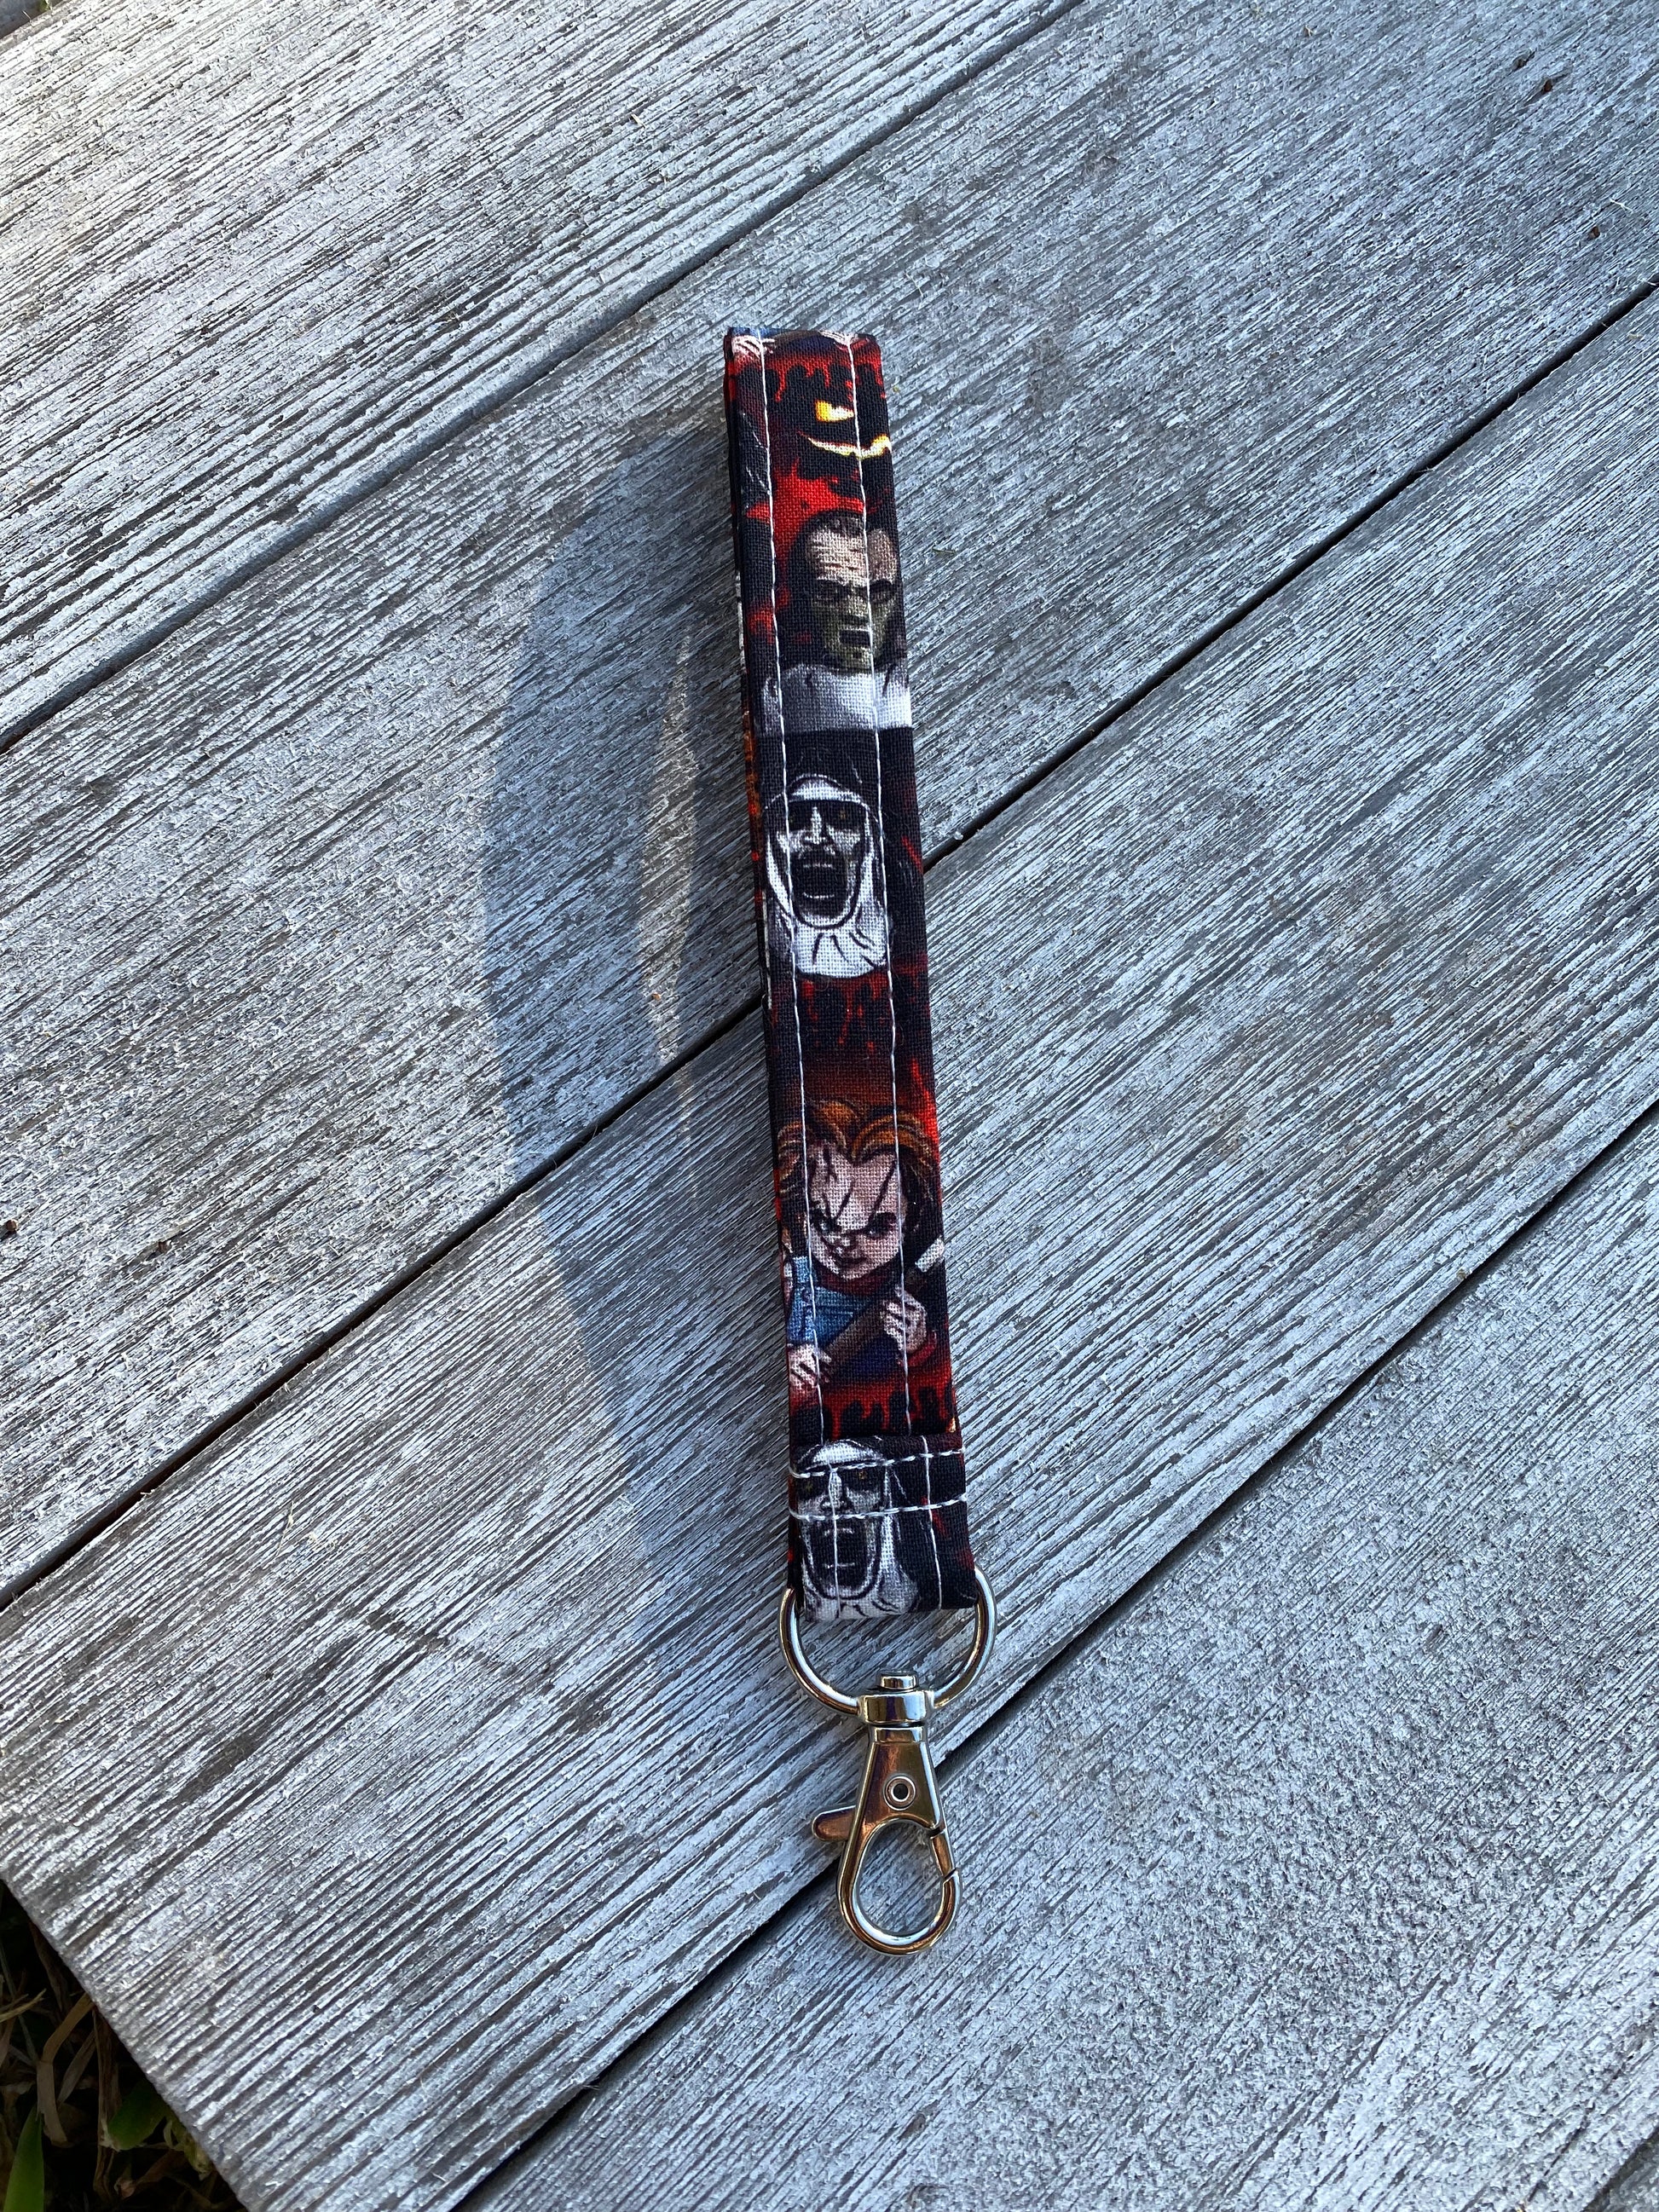 Chucky Key Fob / Keychain / Wristlet 